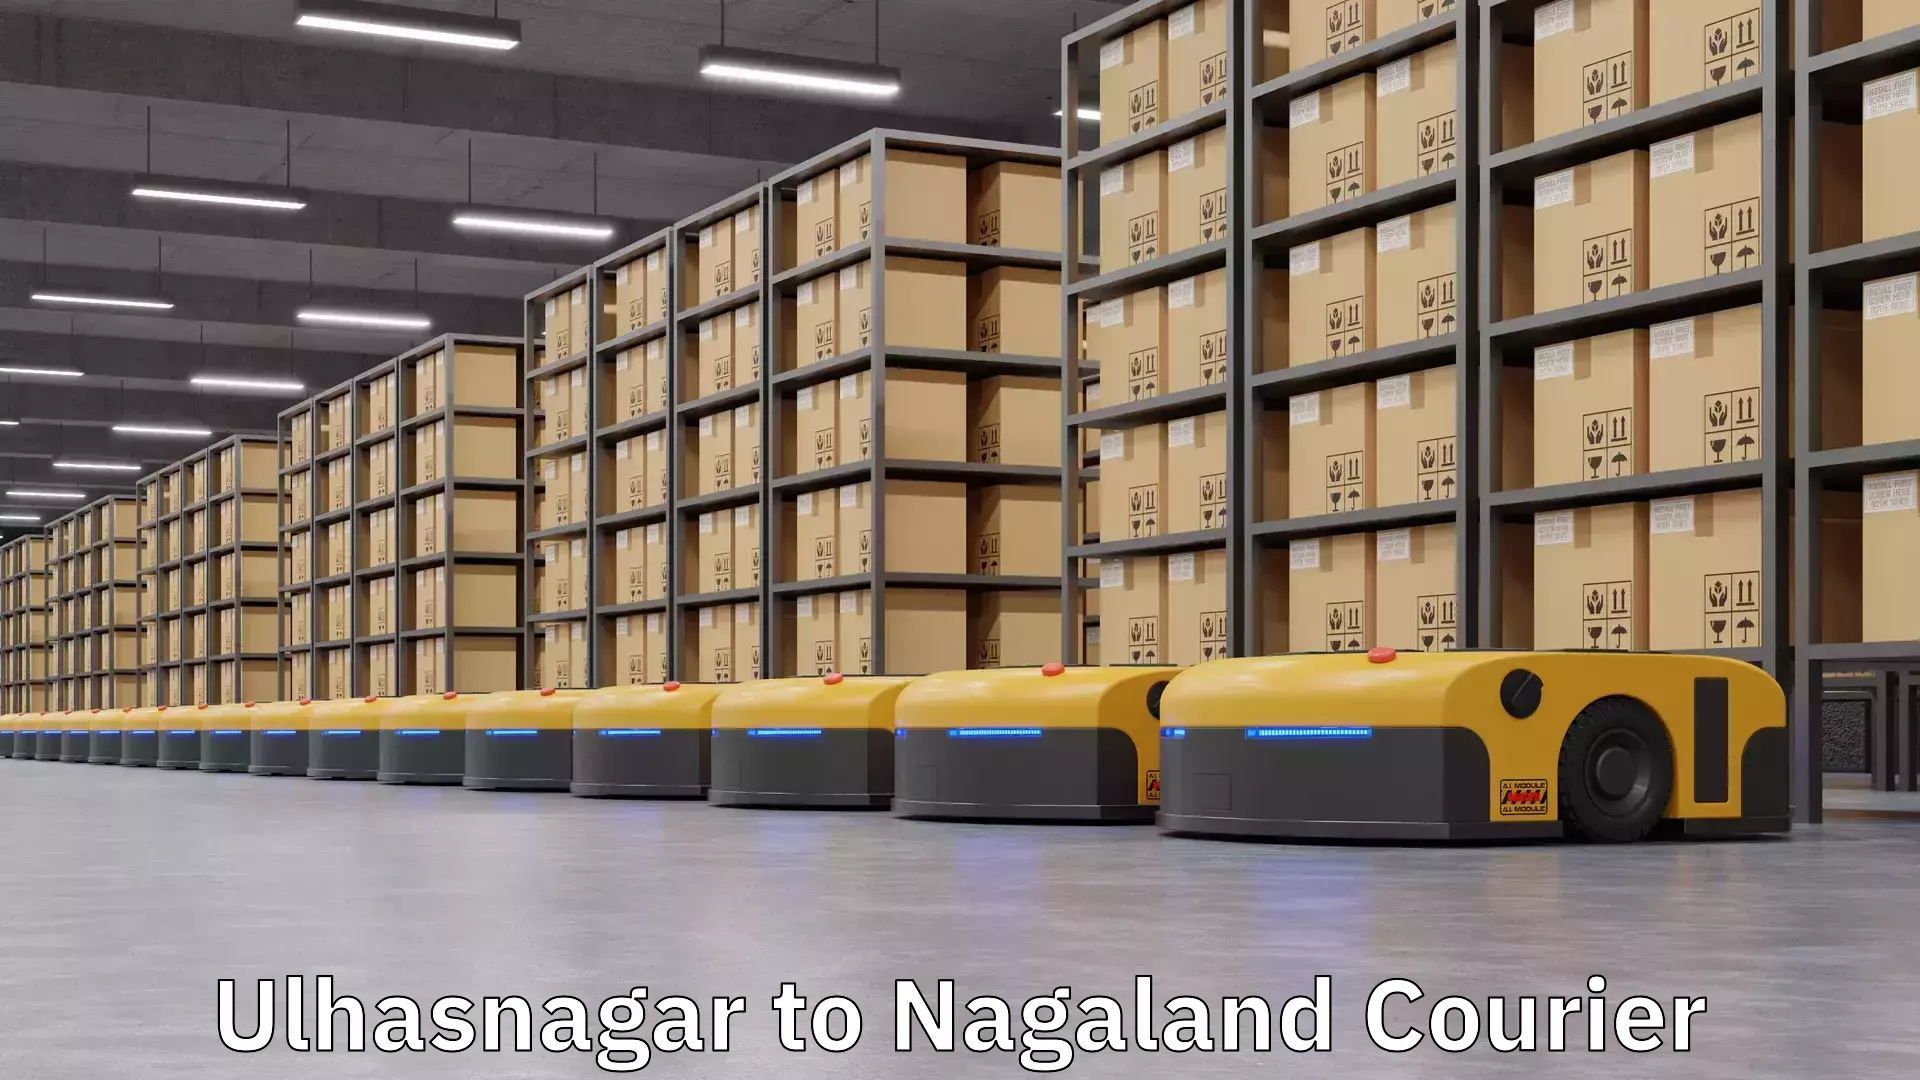 Express logistics providers Ulhasnagar to Nagaland